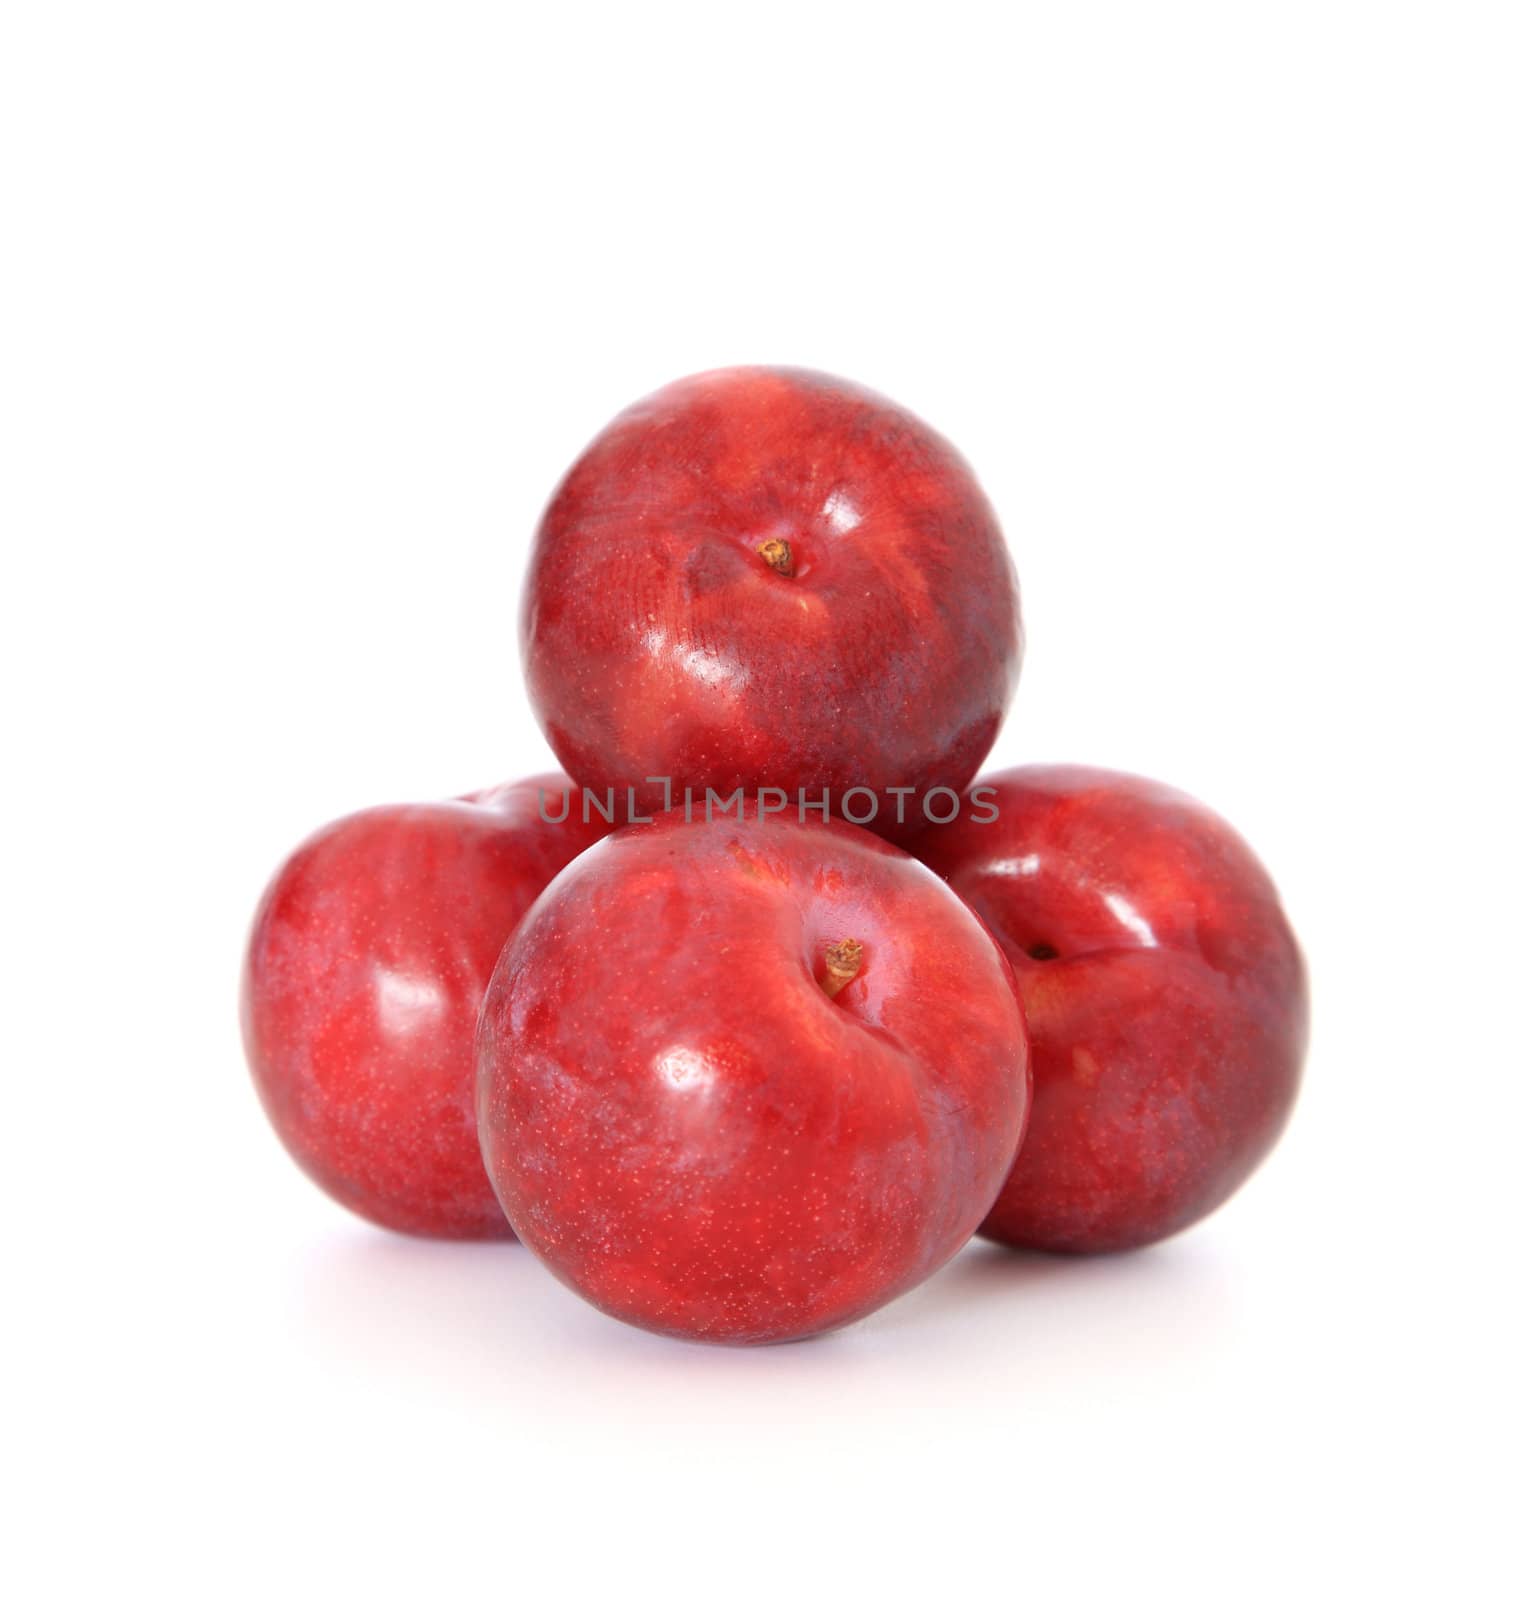 Red apples by kaarsten